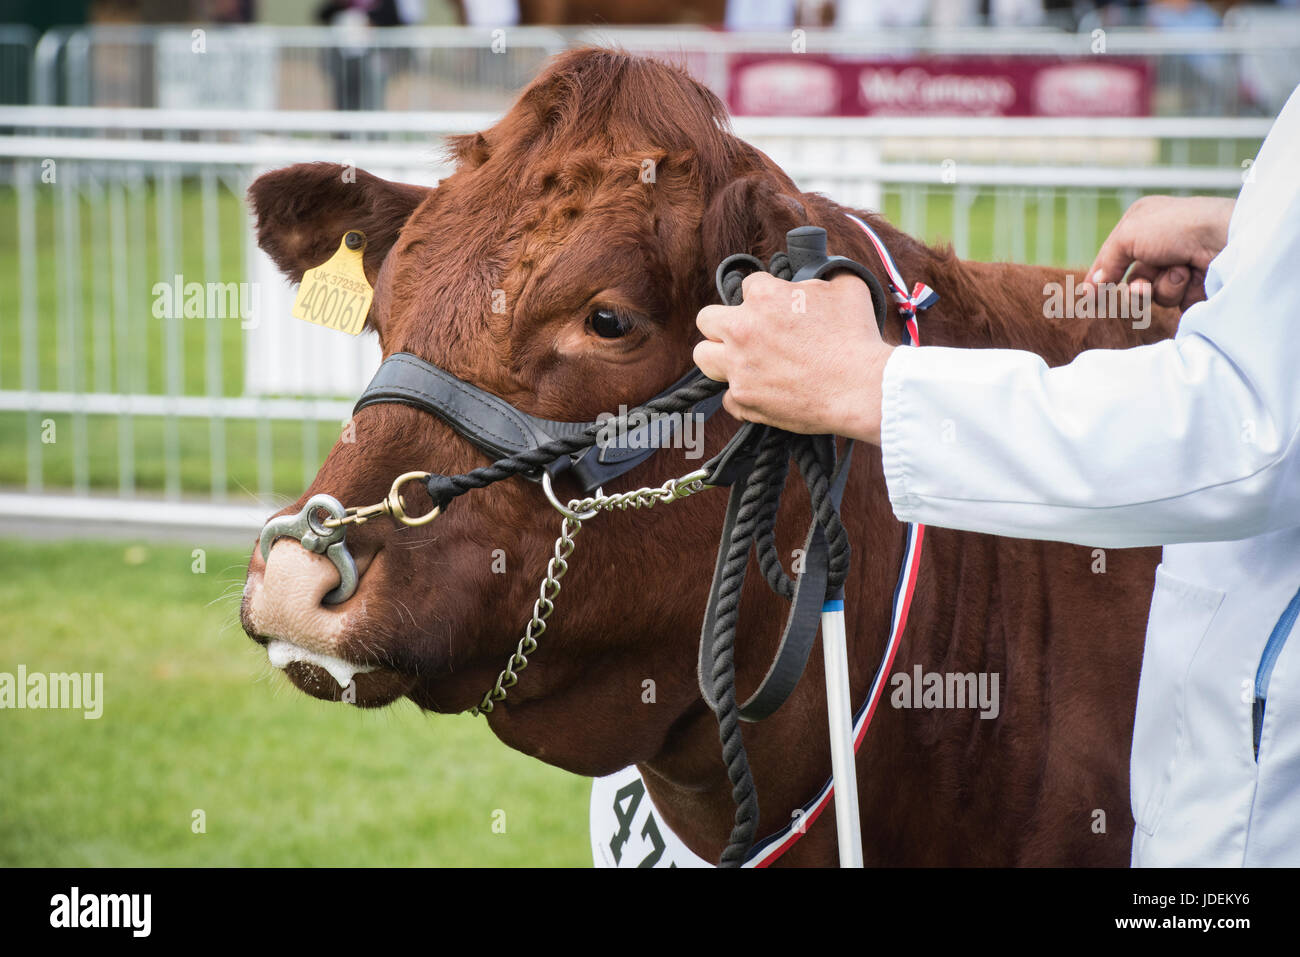 Taureau BOS. Vache Devon en spectacle lors d'un spectacle agricole. ROYAUME-UNI Banque D'Images